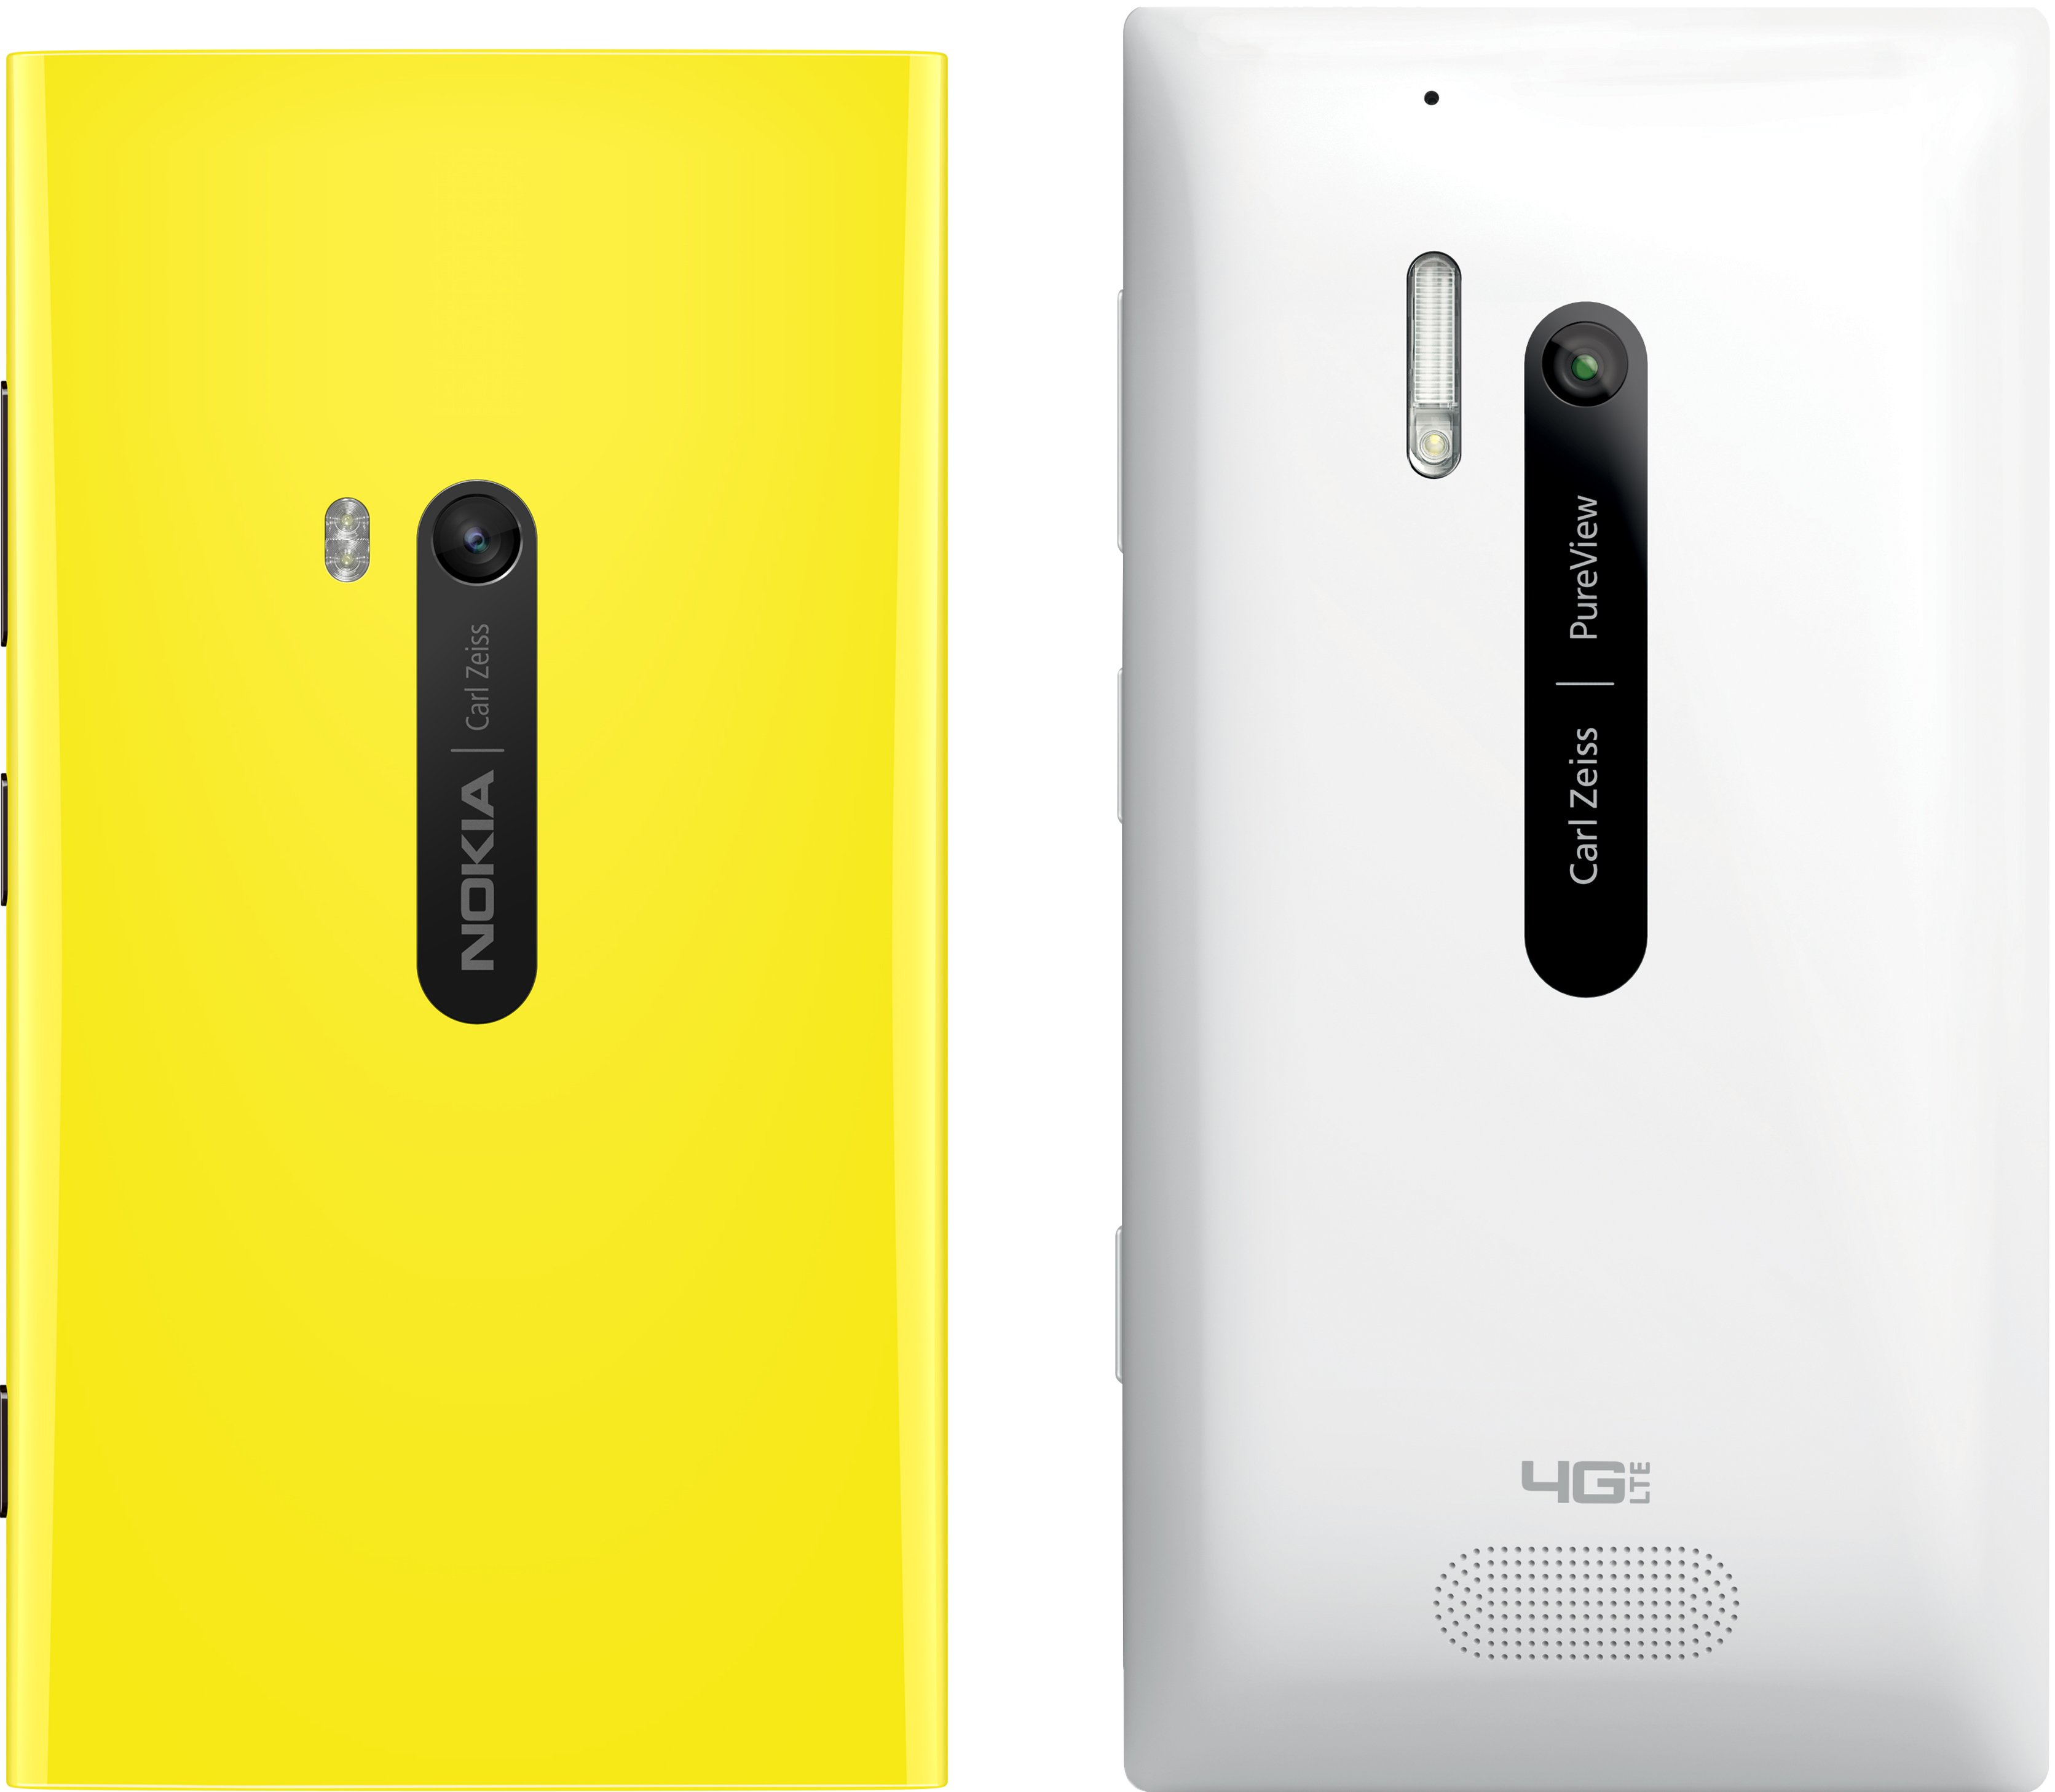 Nokia Lumia 920 and 928 Back